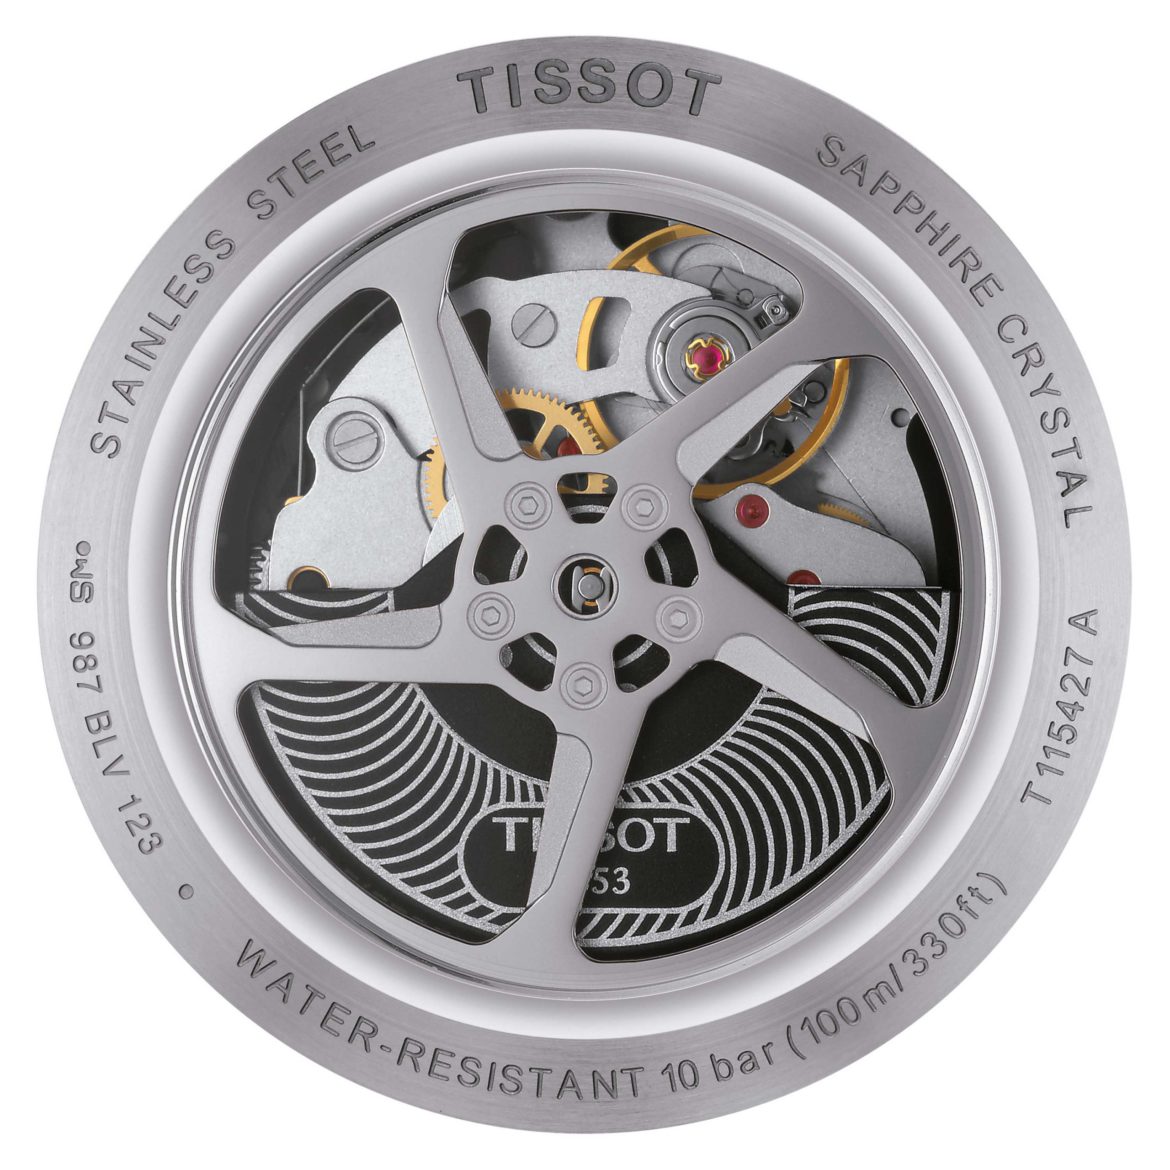 TISSOT</br>Tissot T-Race Chronograph Automatic</br>T1154272703100